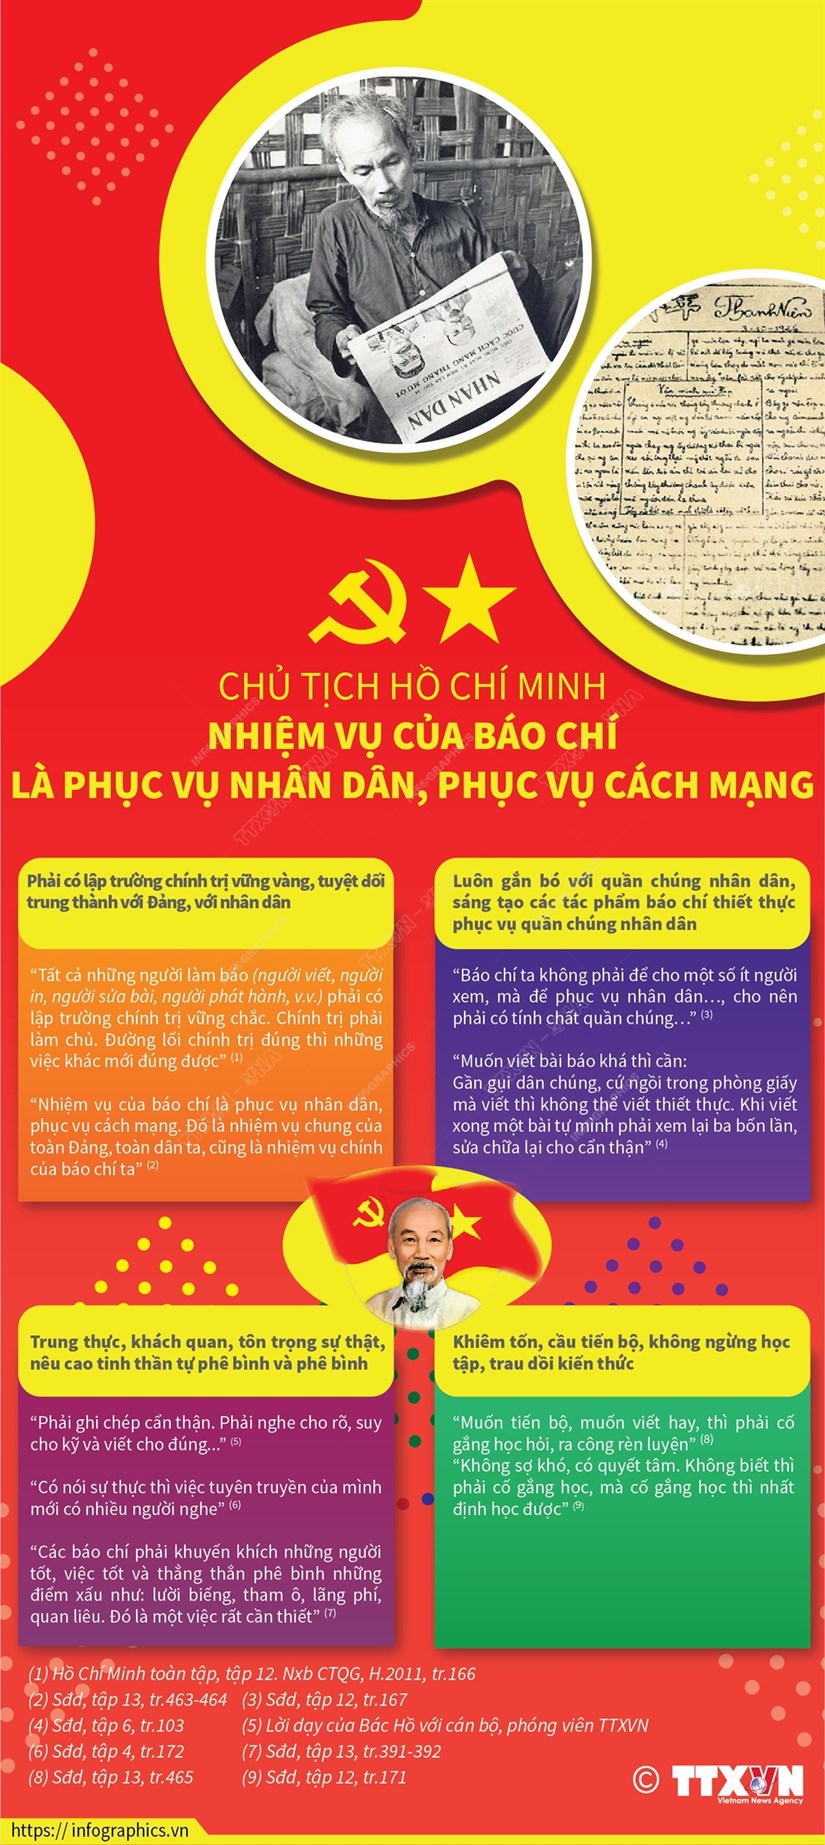 Những lời dạy của Chủ tịch Hồ Chí Minh mãi là “kim chỉ nam” cho các thế hệ nhà báo, cơ quan báo chí trong quá trình tu dưỡng, phấn đấu, trưởng thành và lớn mạnh.